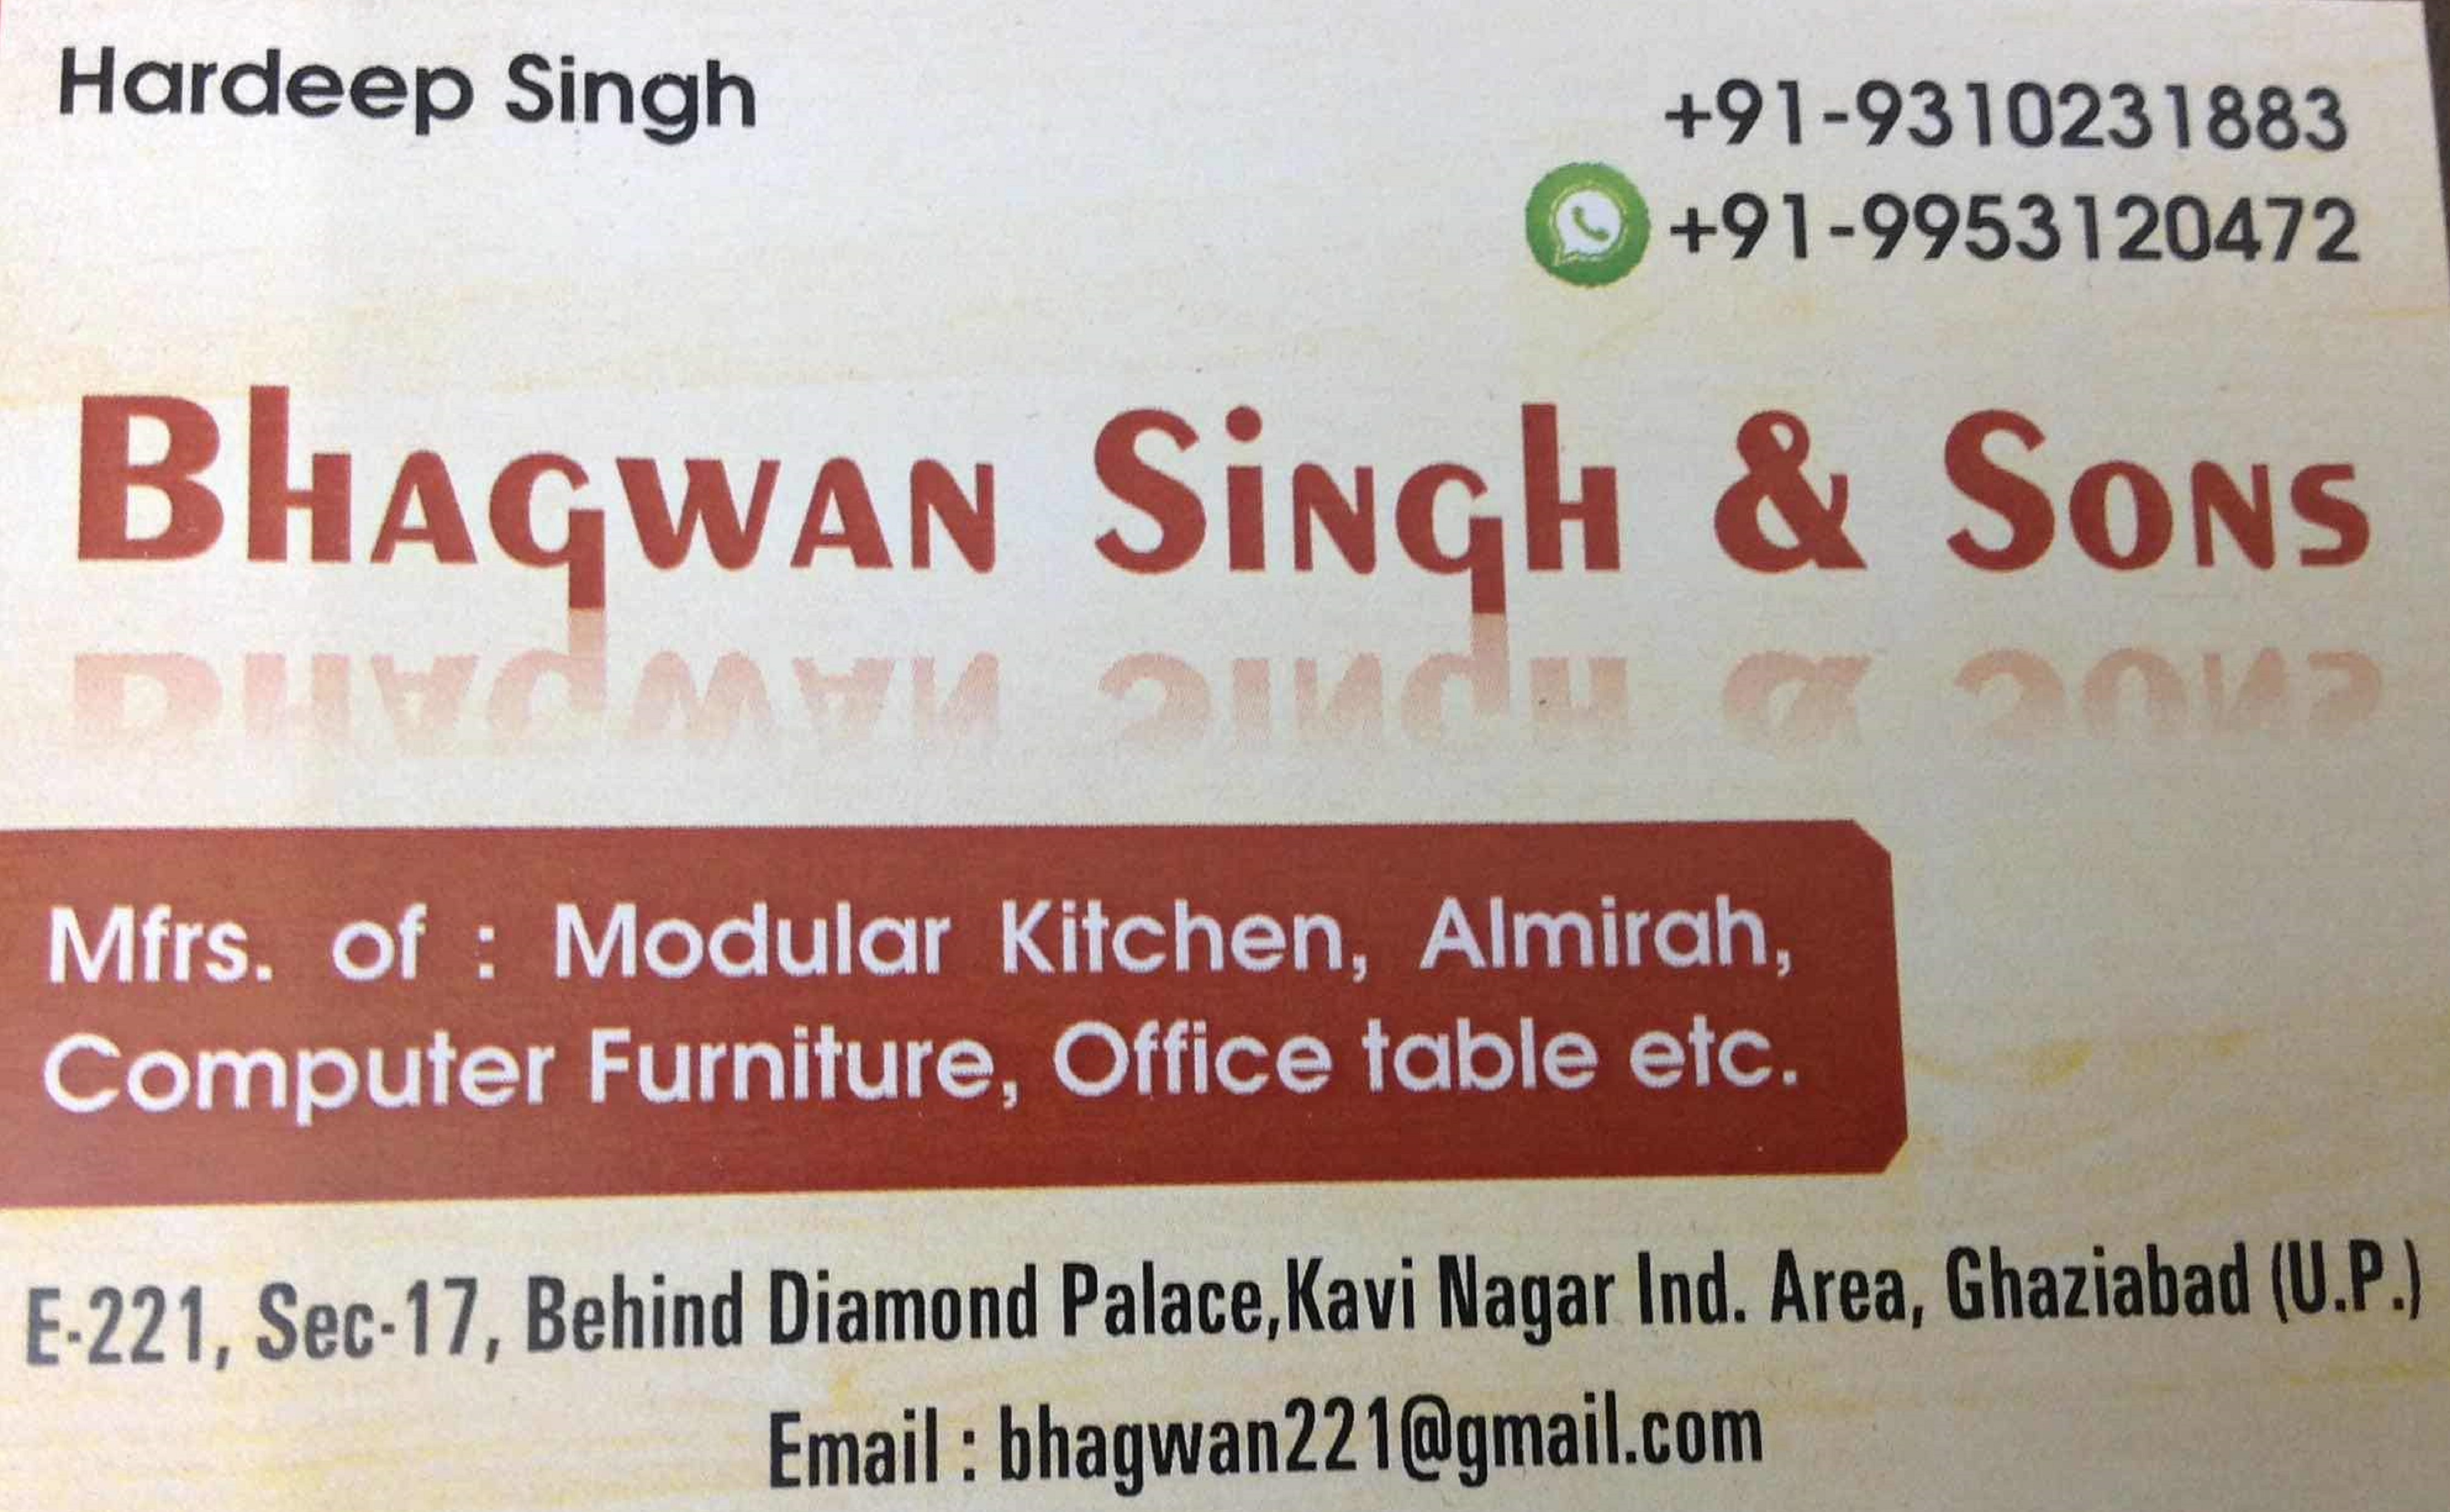 Bhagwan Singh Sons